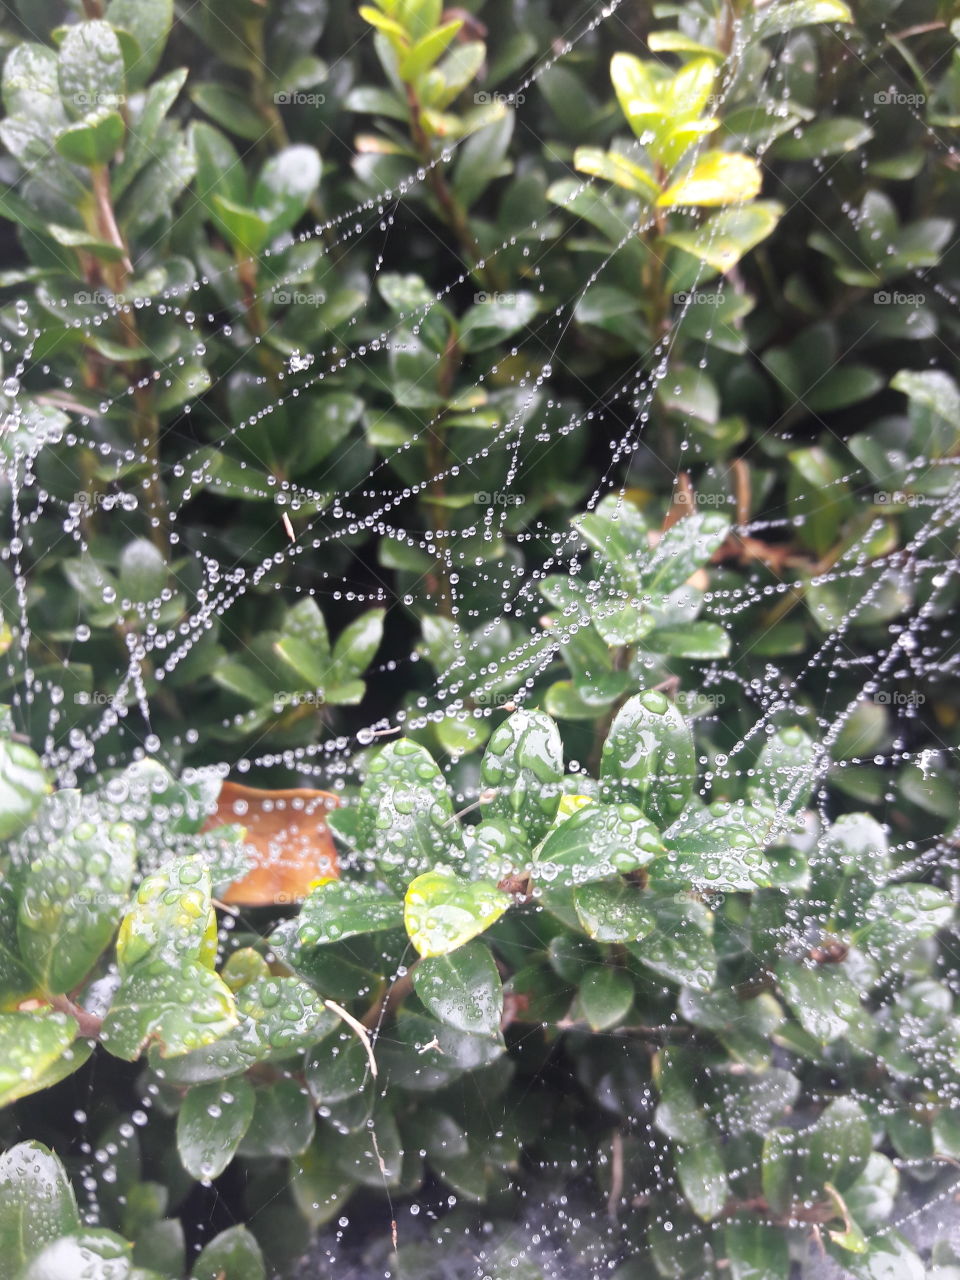 dew in web